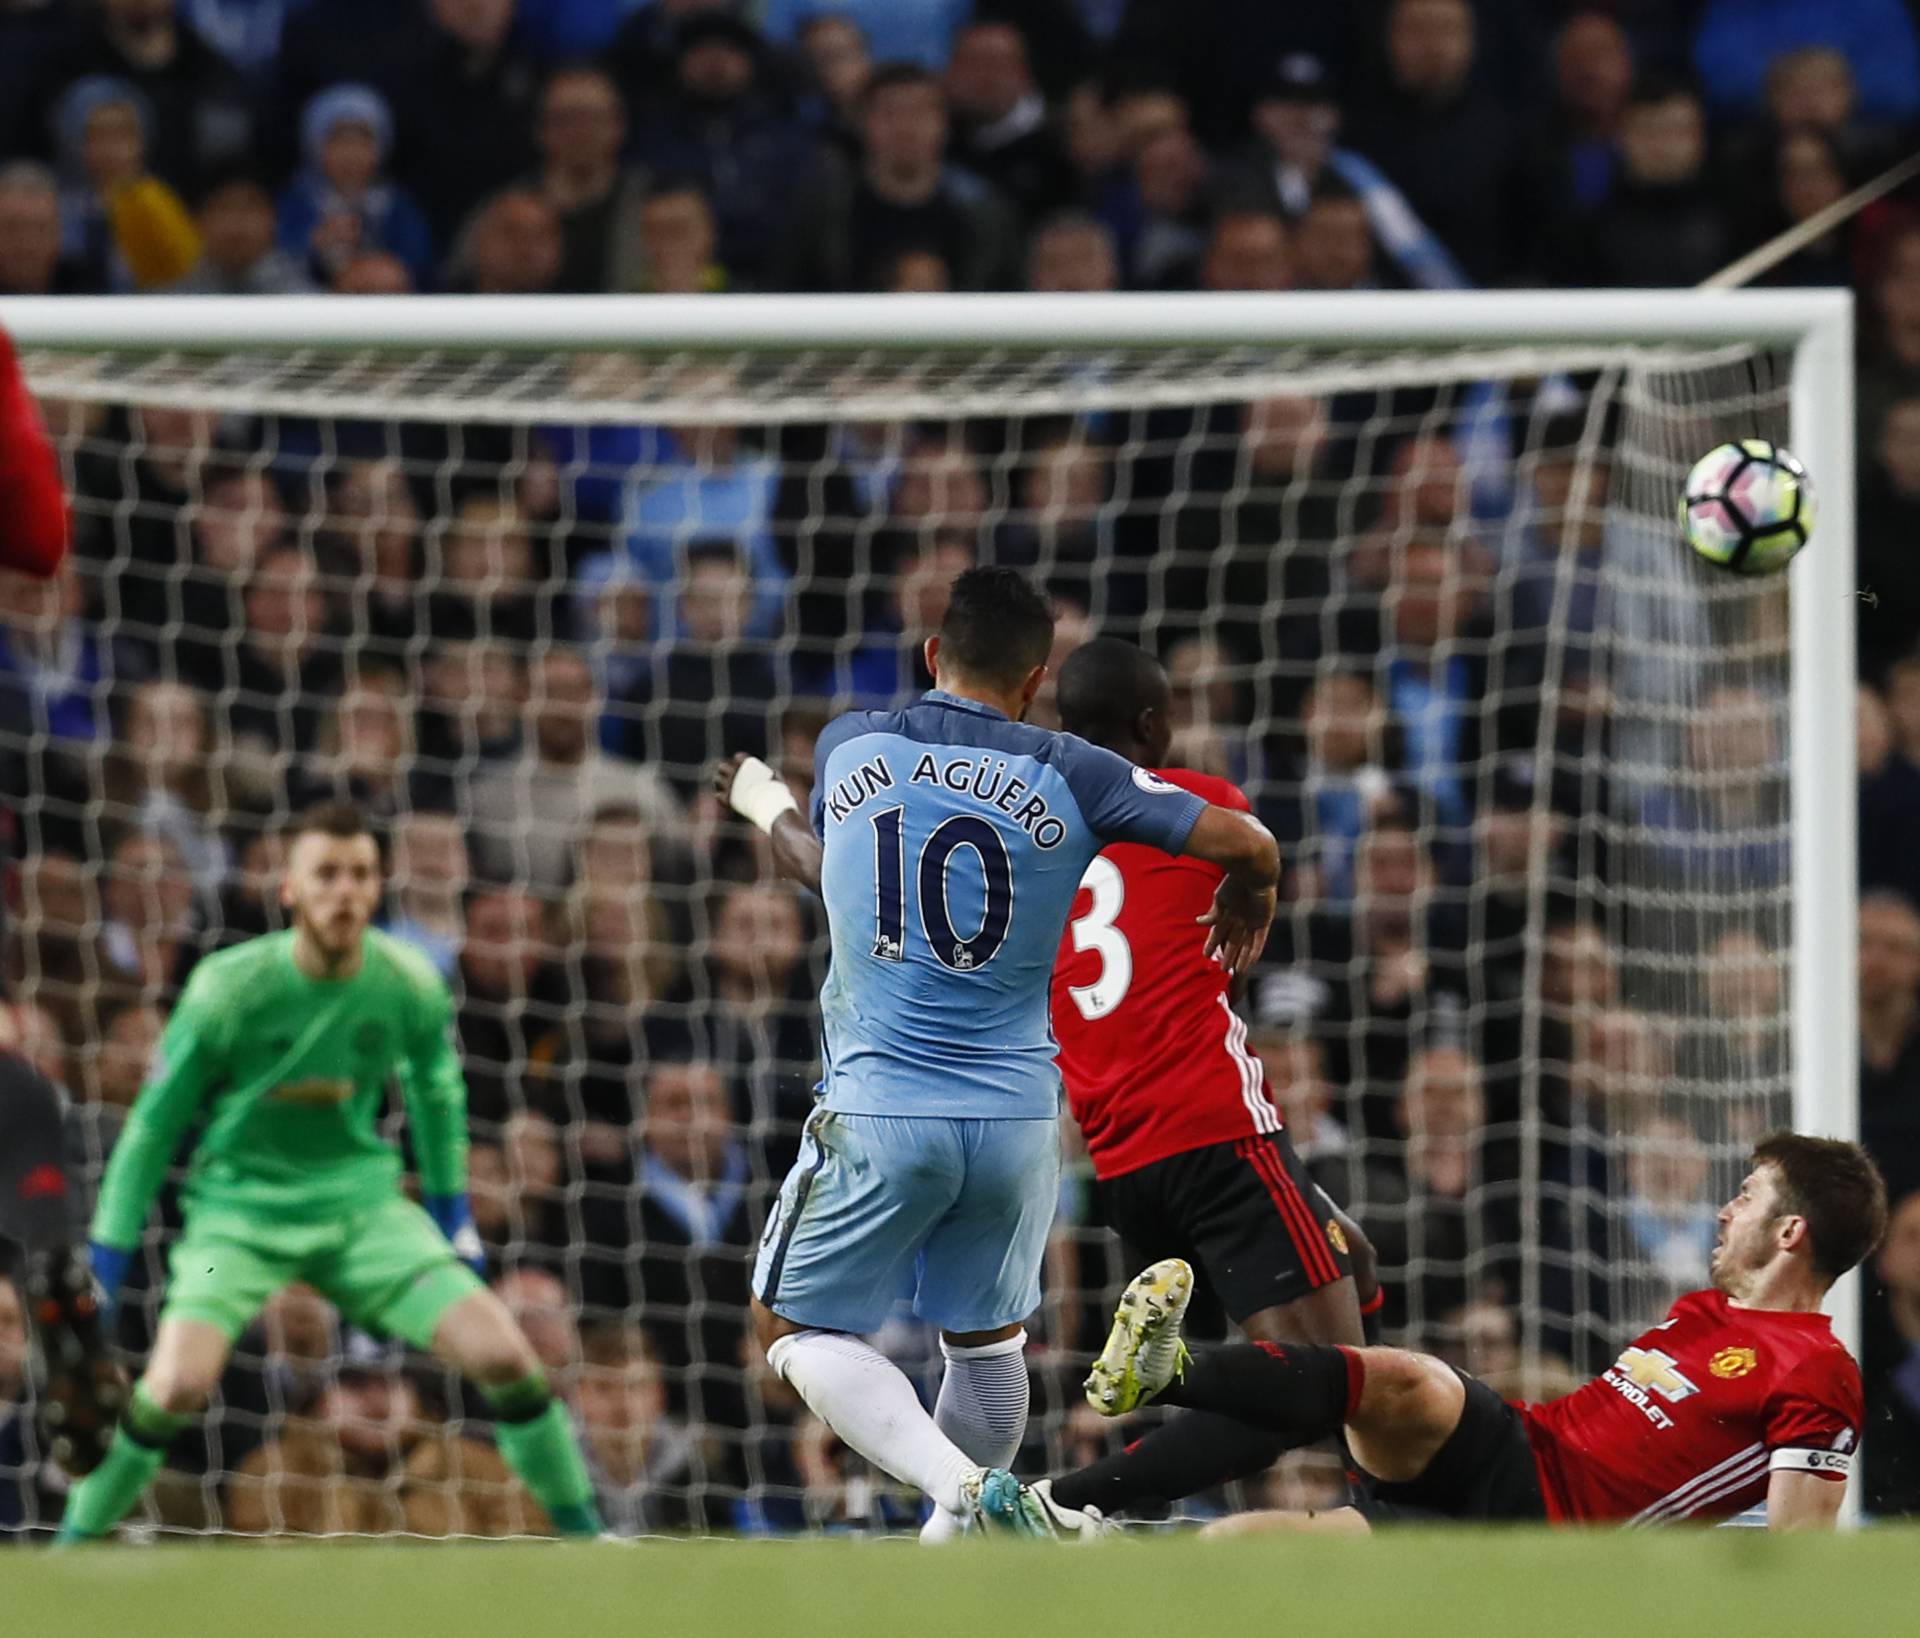 Manchester City's Sergio Aguero shoots at goal